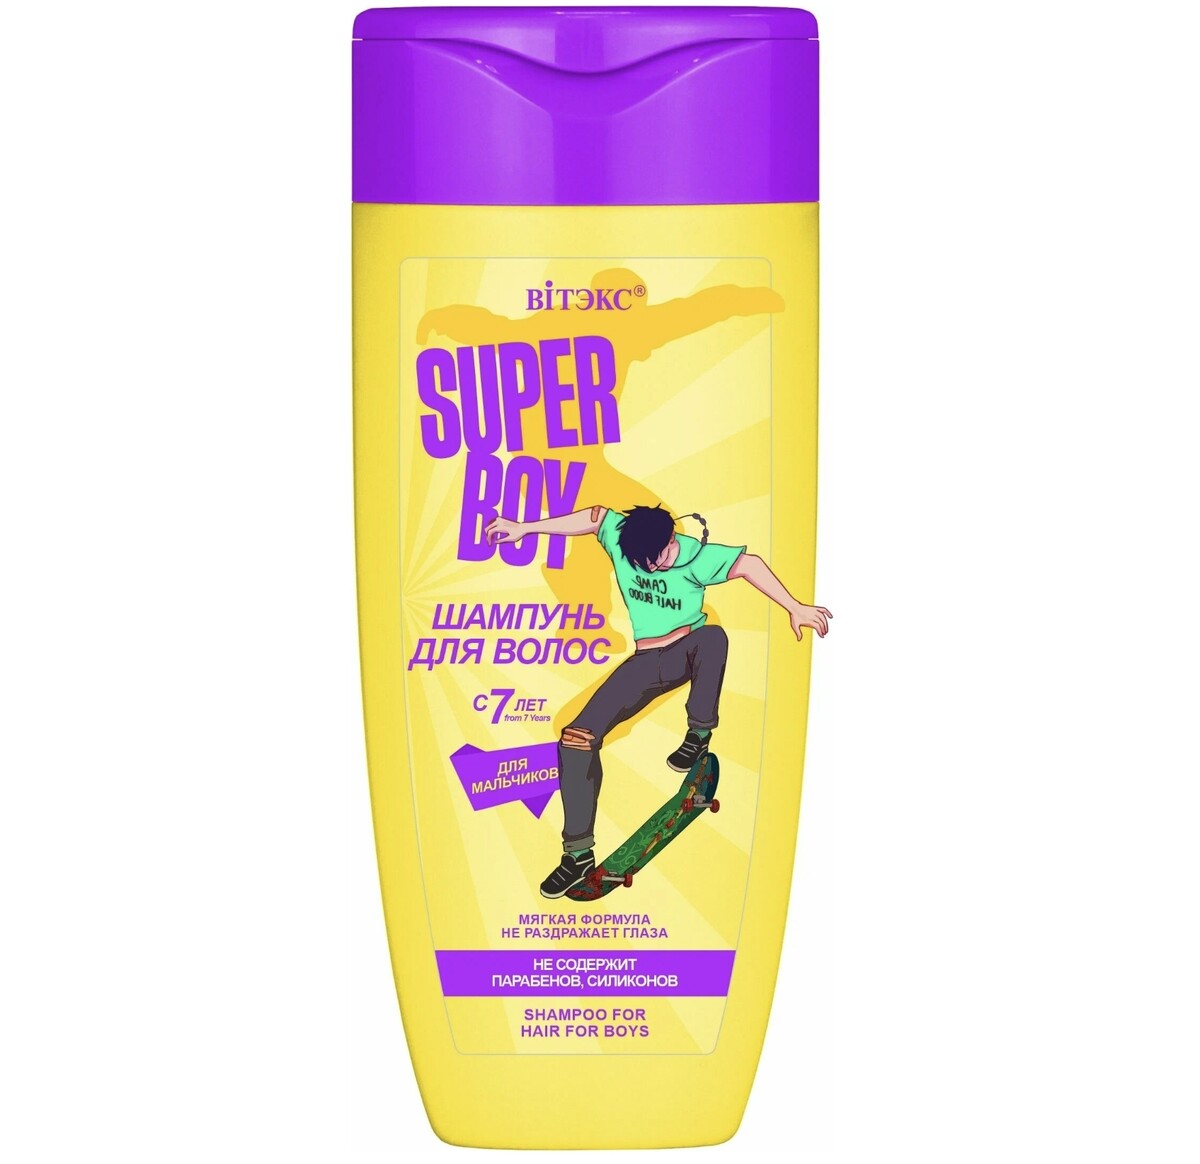 Super boy шампунь для волос для мальчиков с 7 лет, new 275мл